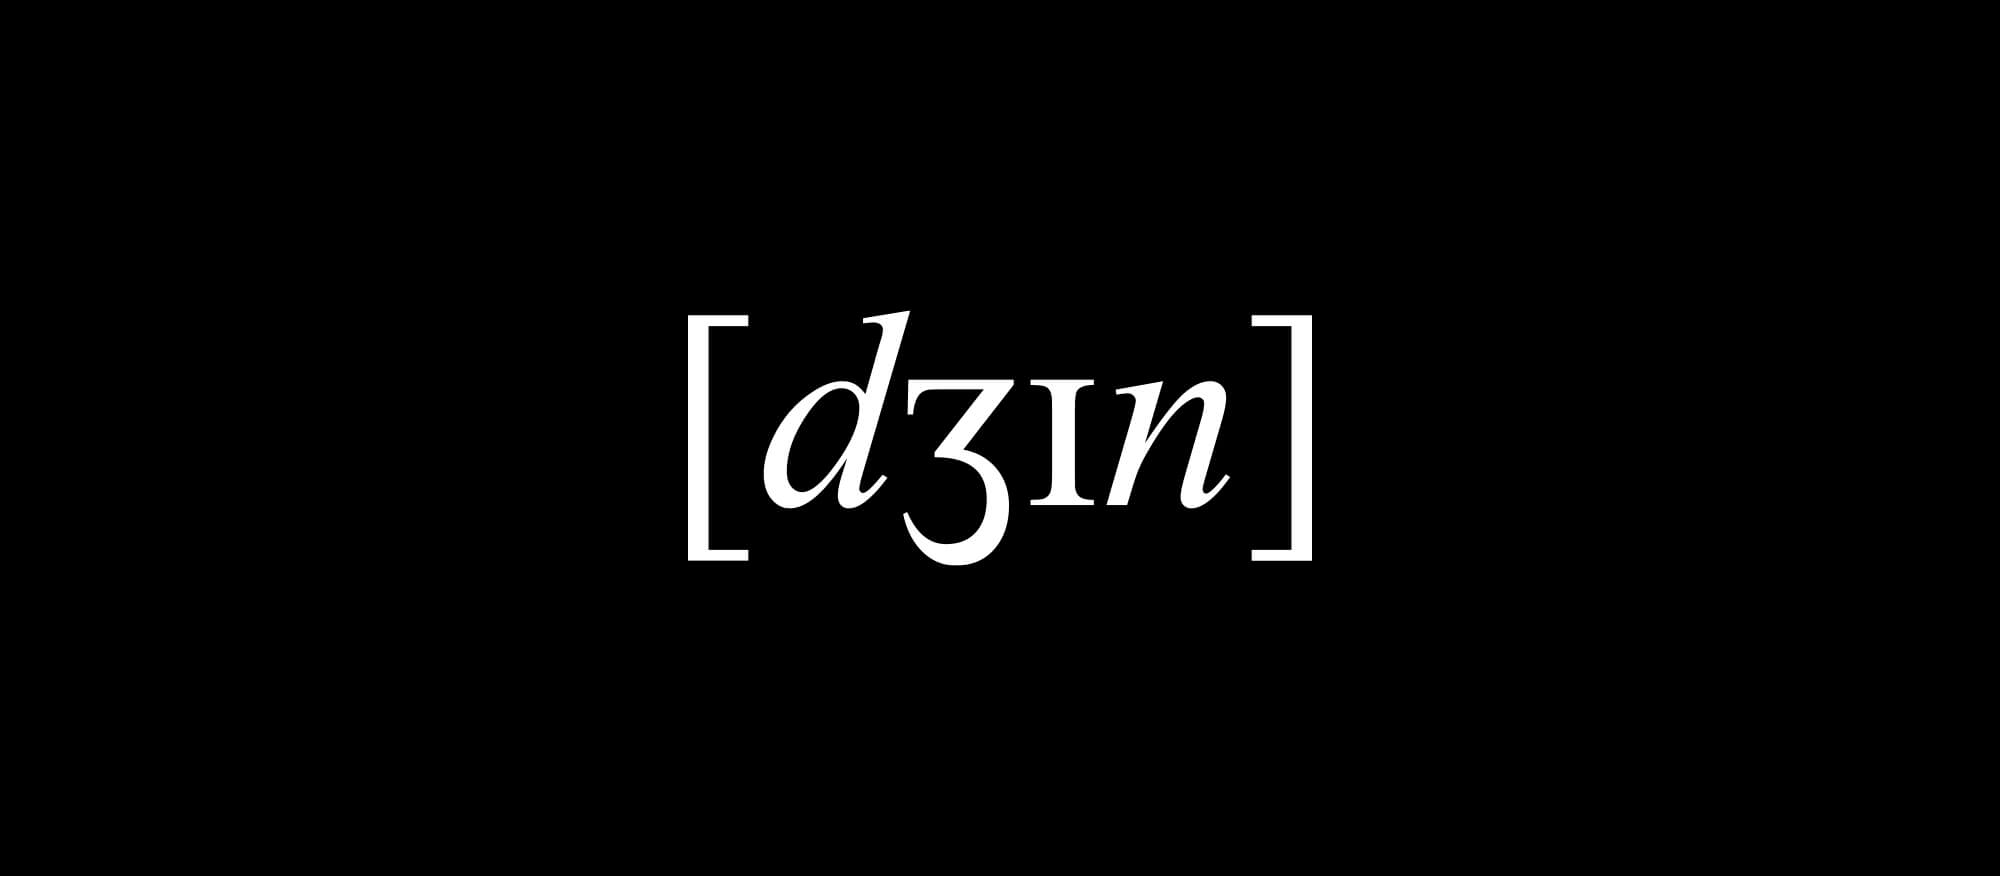 Schau und Horch Logodesign Dein Gin 1 - Corporate Identity für [dʒɪn]